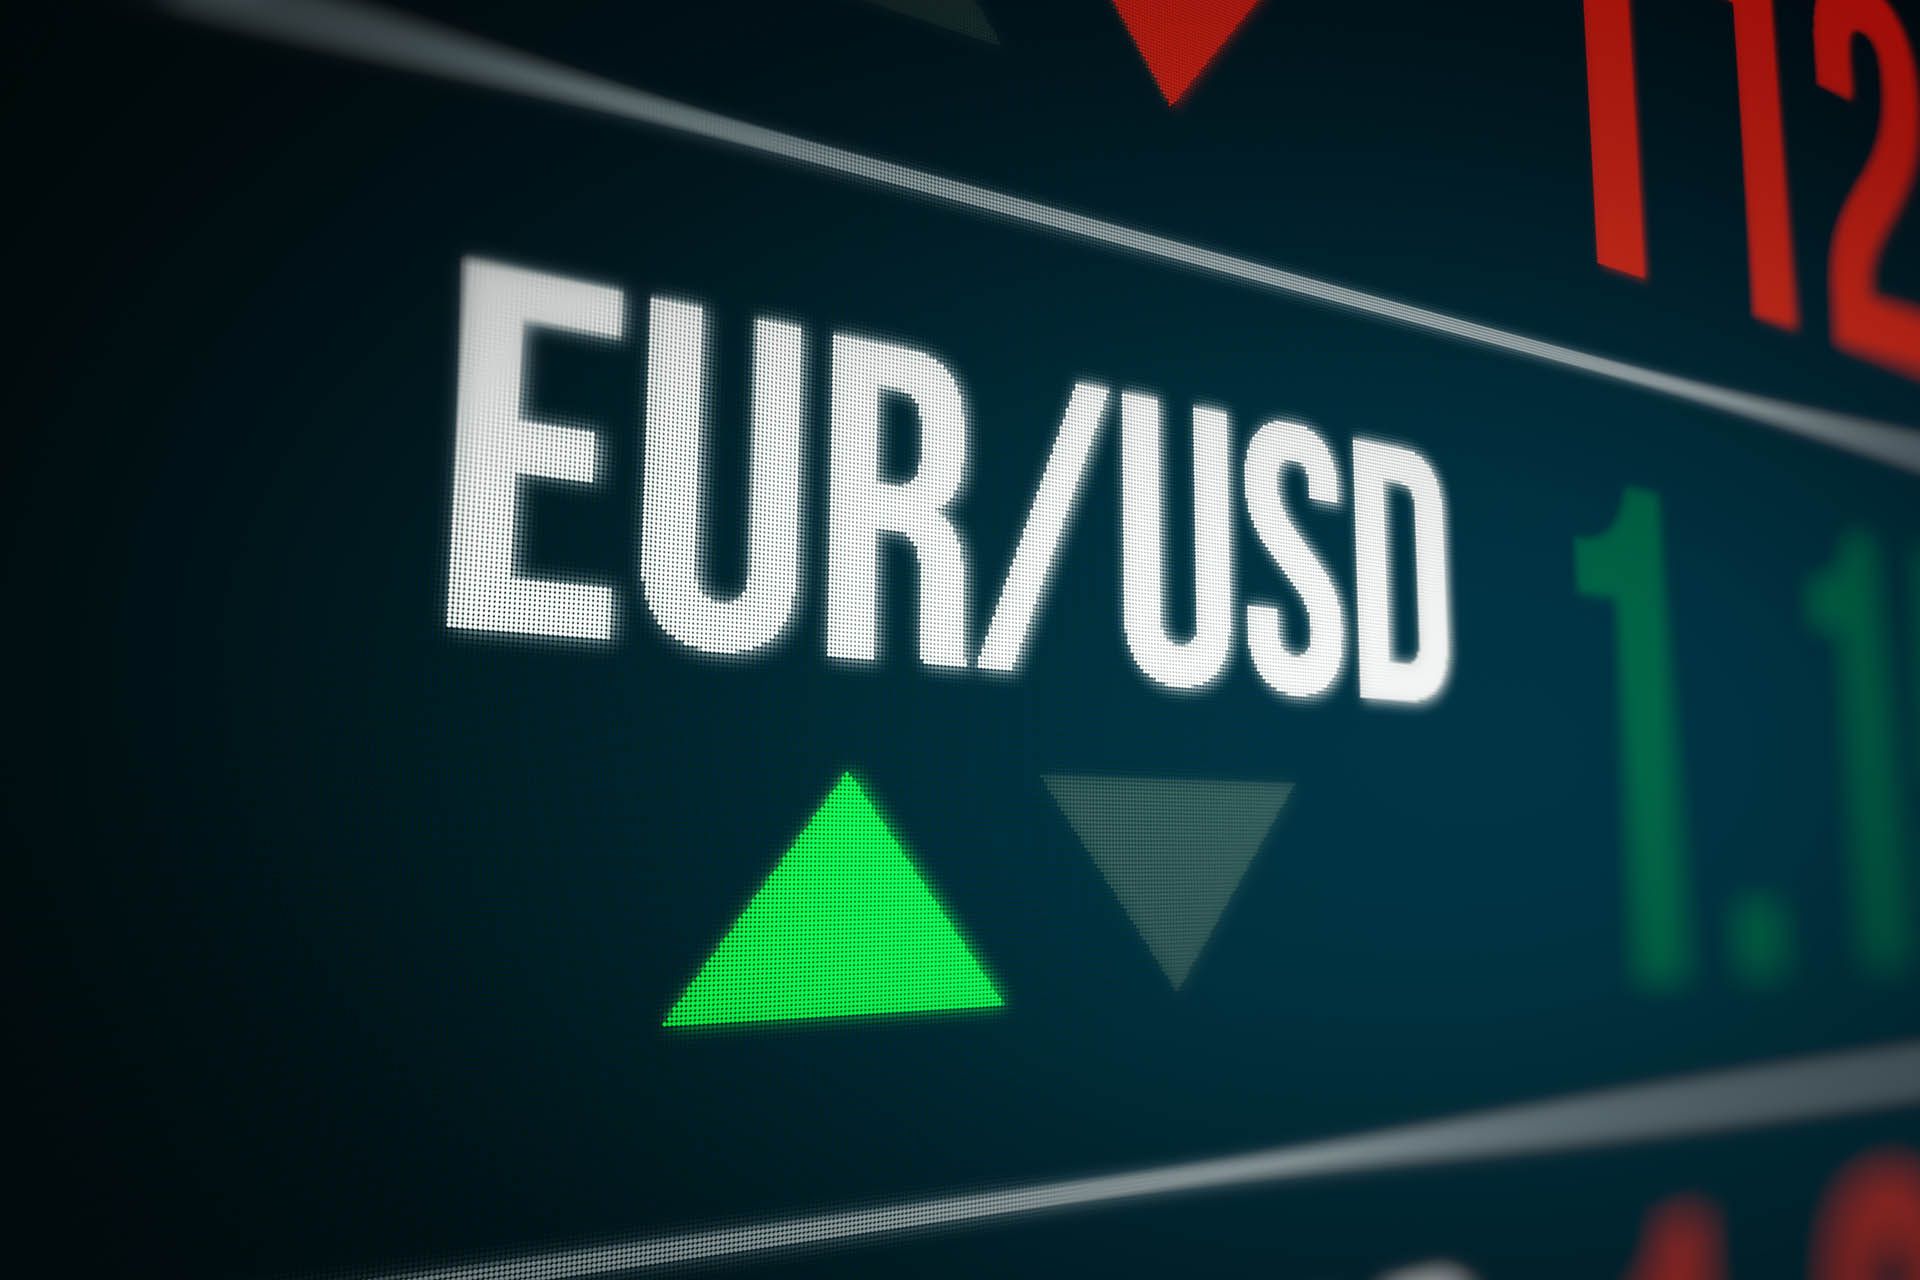 Euro-to-Dollar 